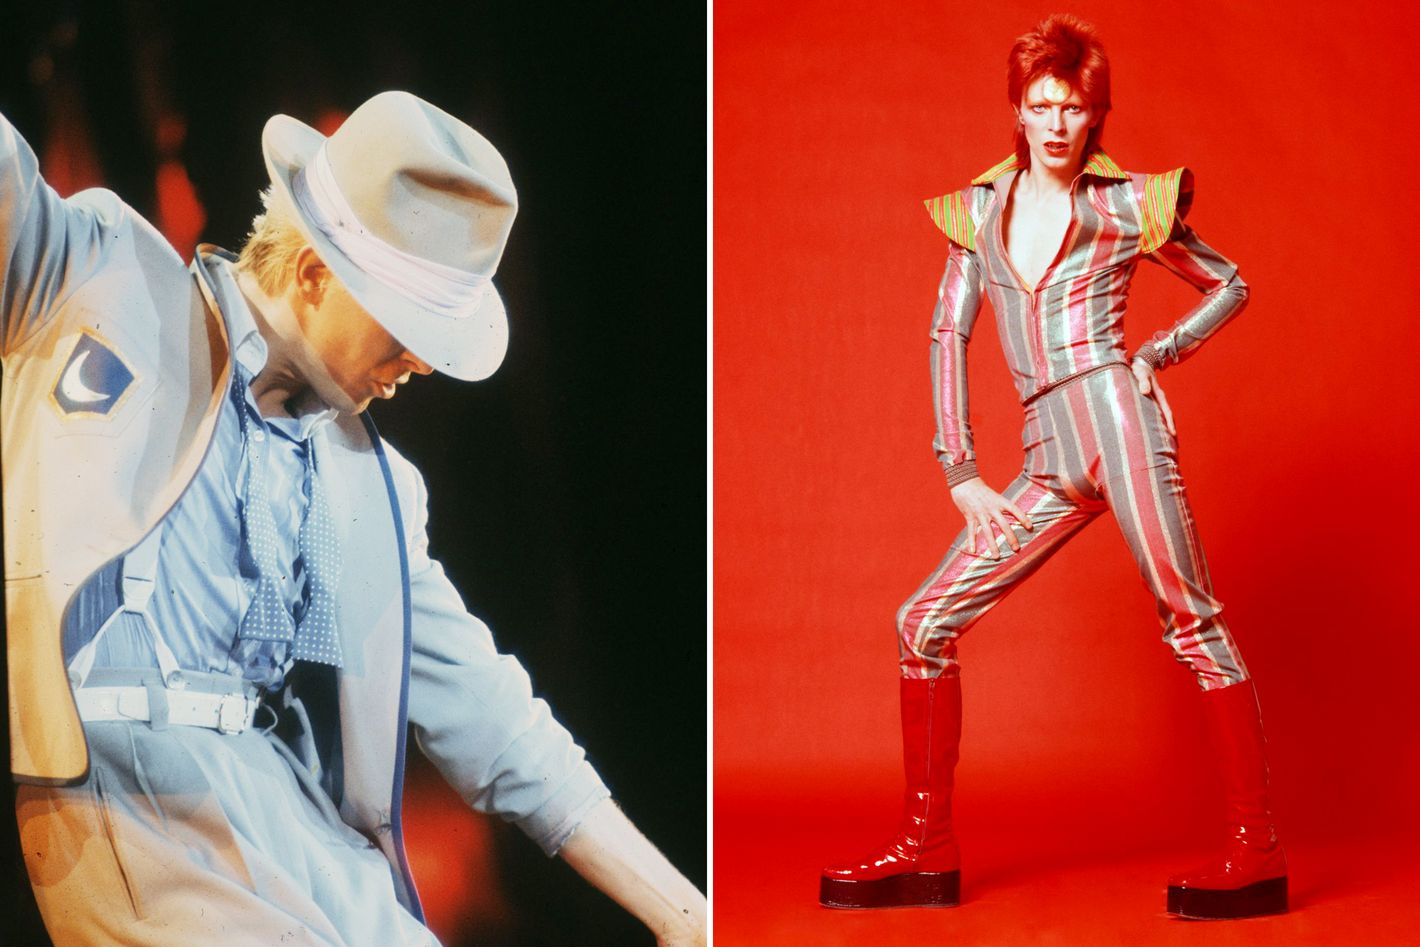 Kansai Yamamoto On Dressing David Bowie As Ziggy Stardust 7124